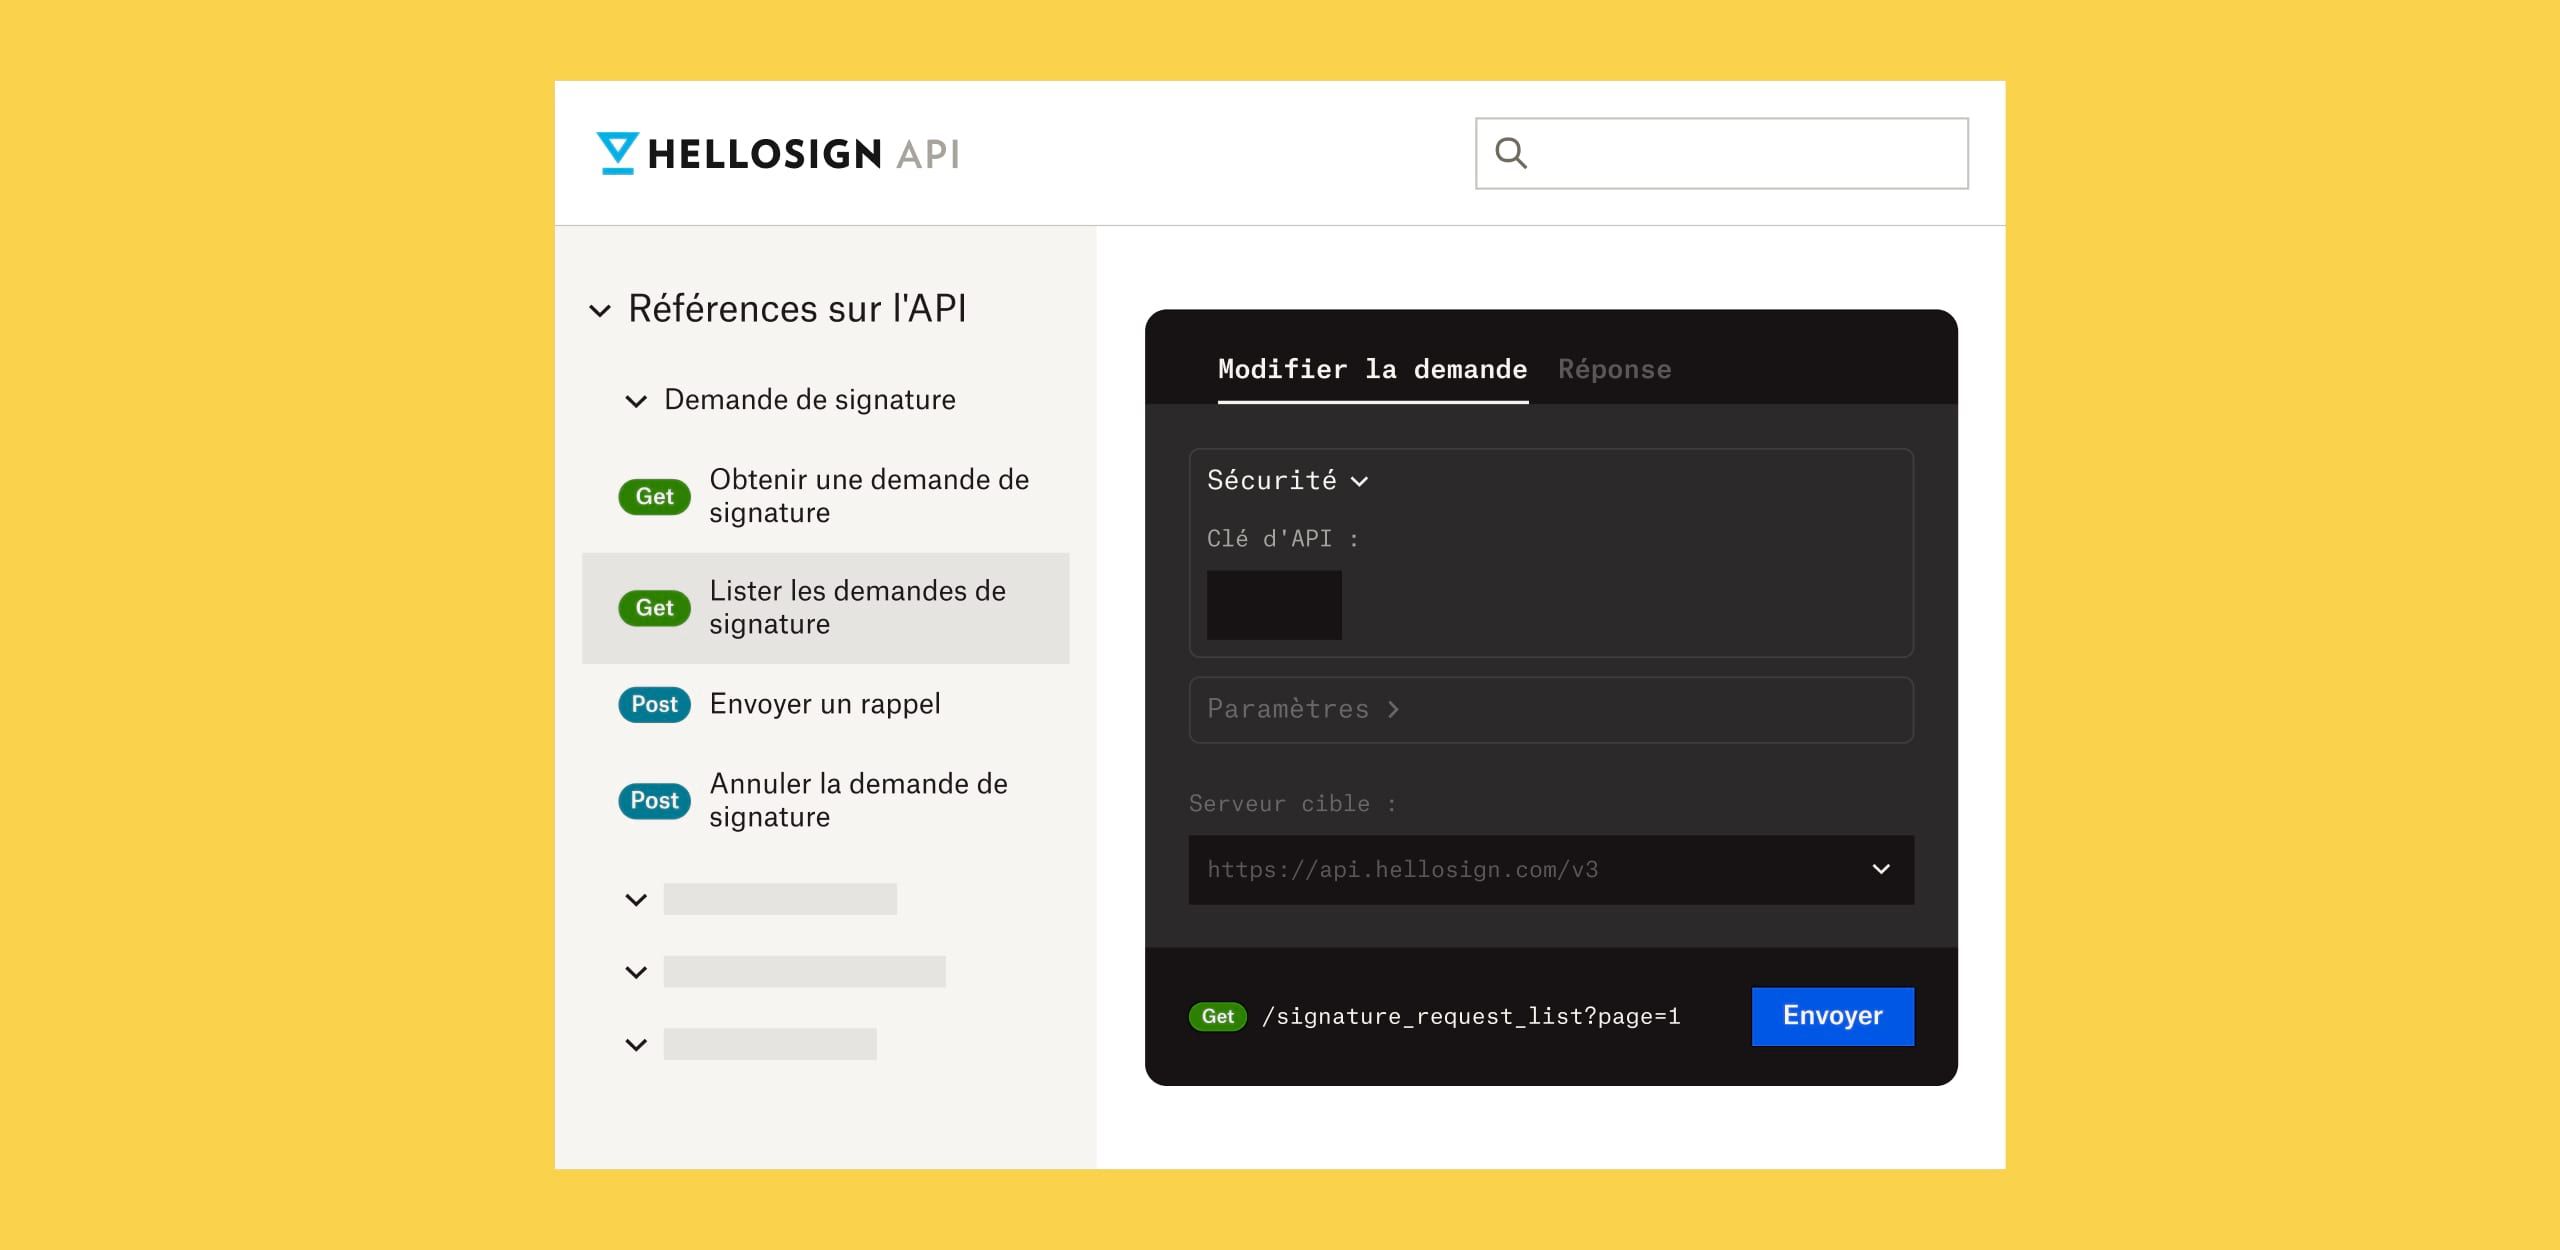 Écran sur les références HelloSign API avec du texte gris clair sur un fond noir